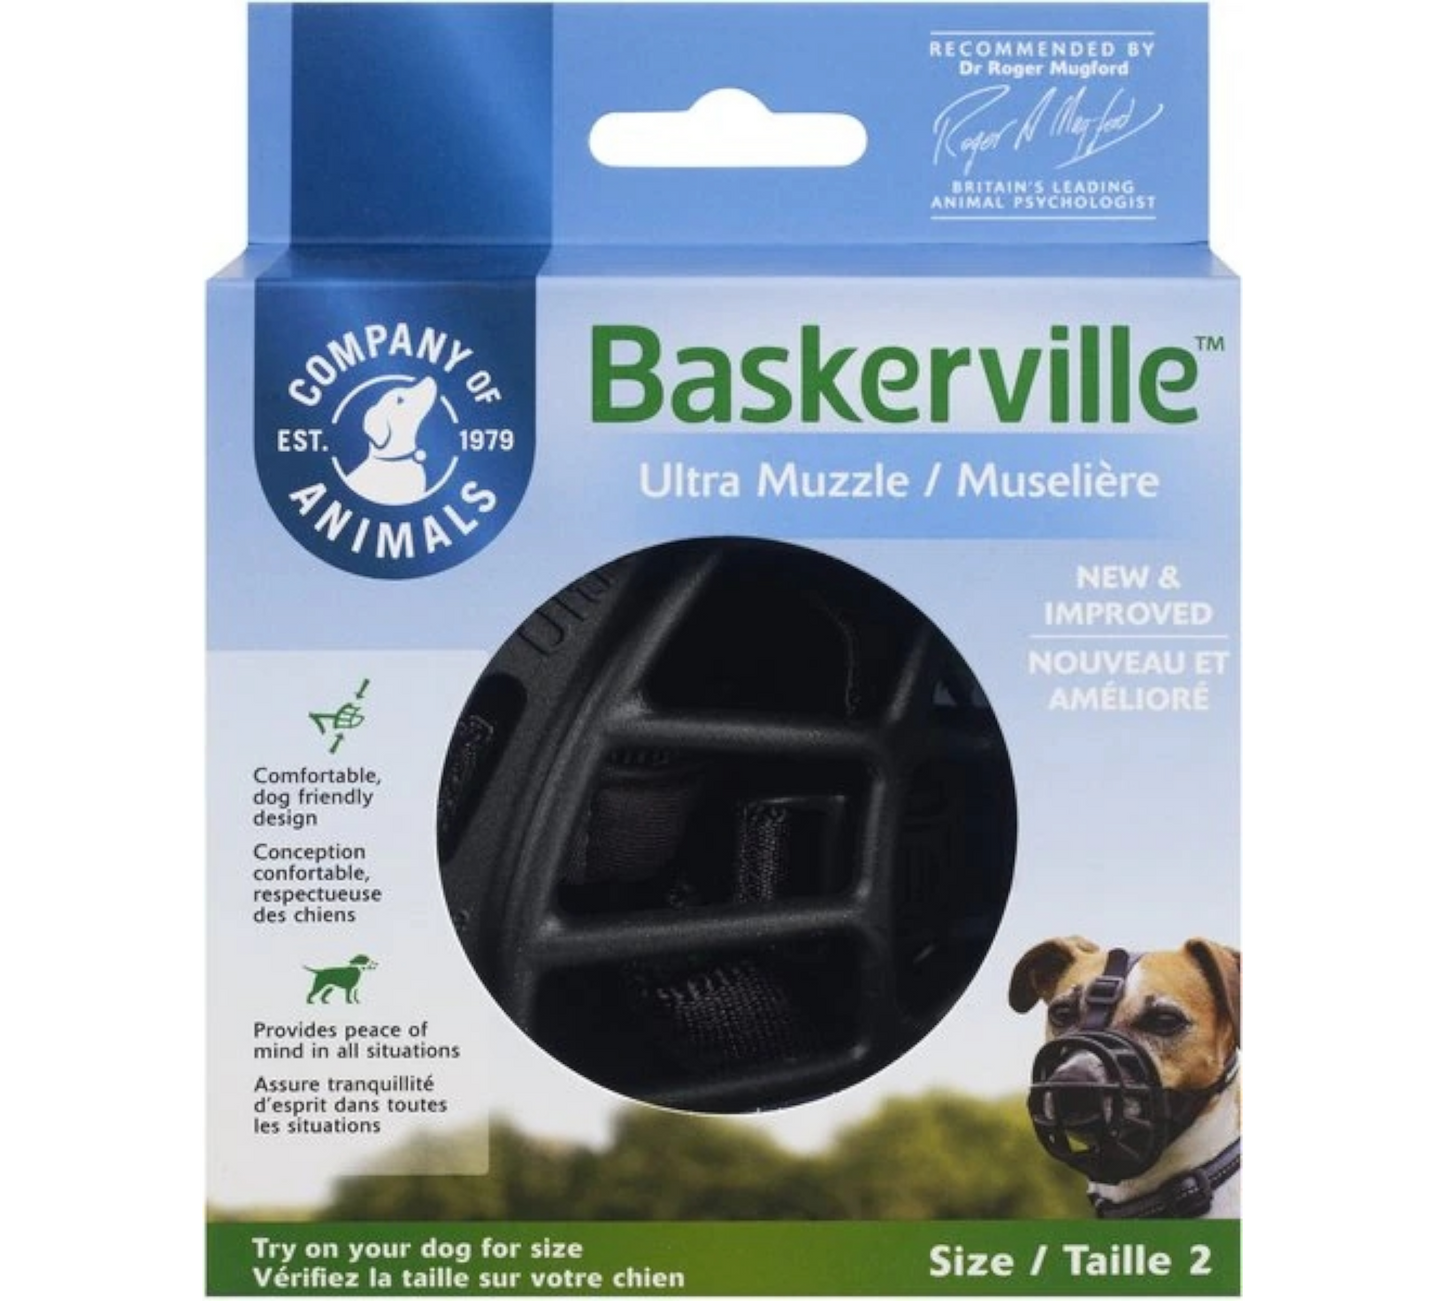 Canine's World Dog Muzzles Baskerville Ultra Dog Muzzle Company of Animals